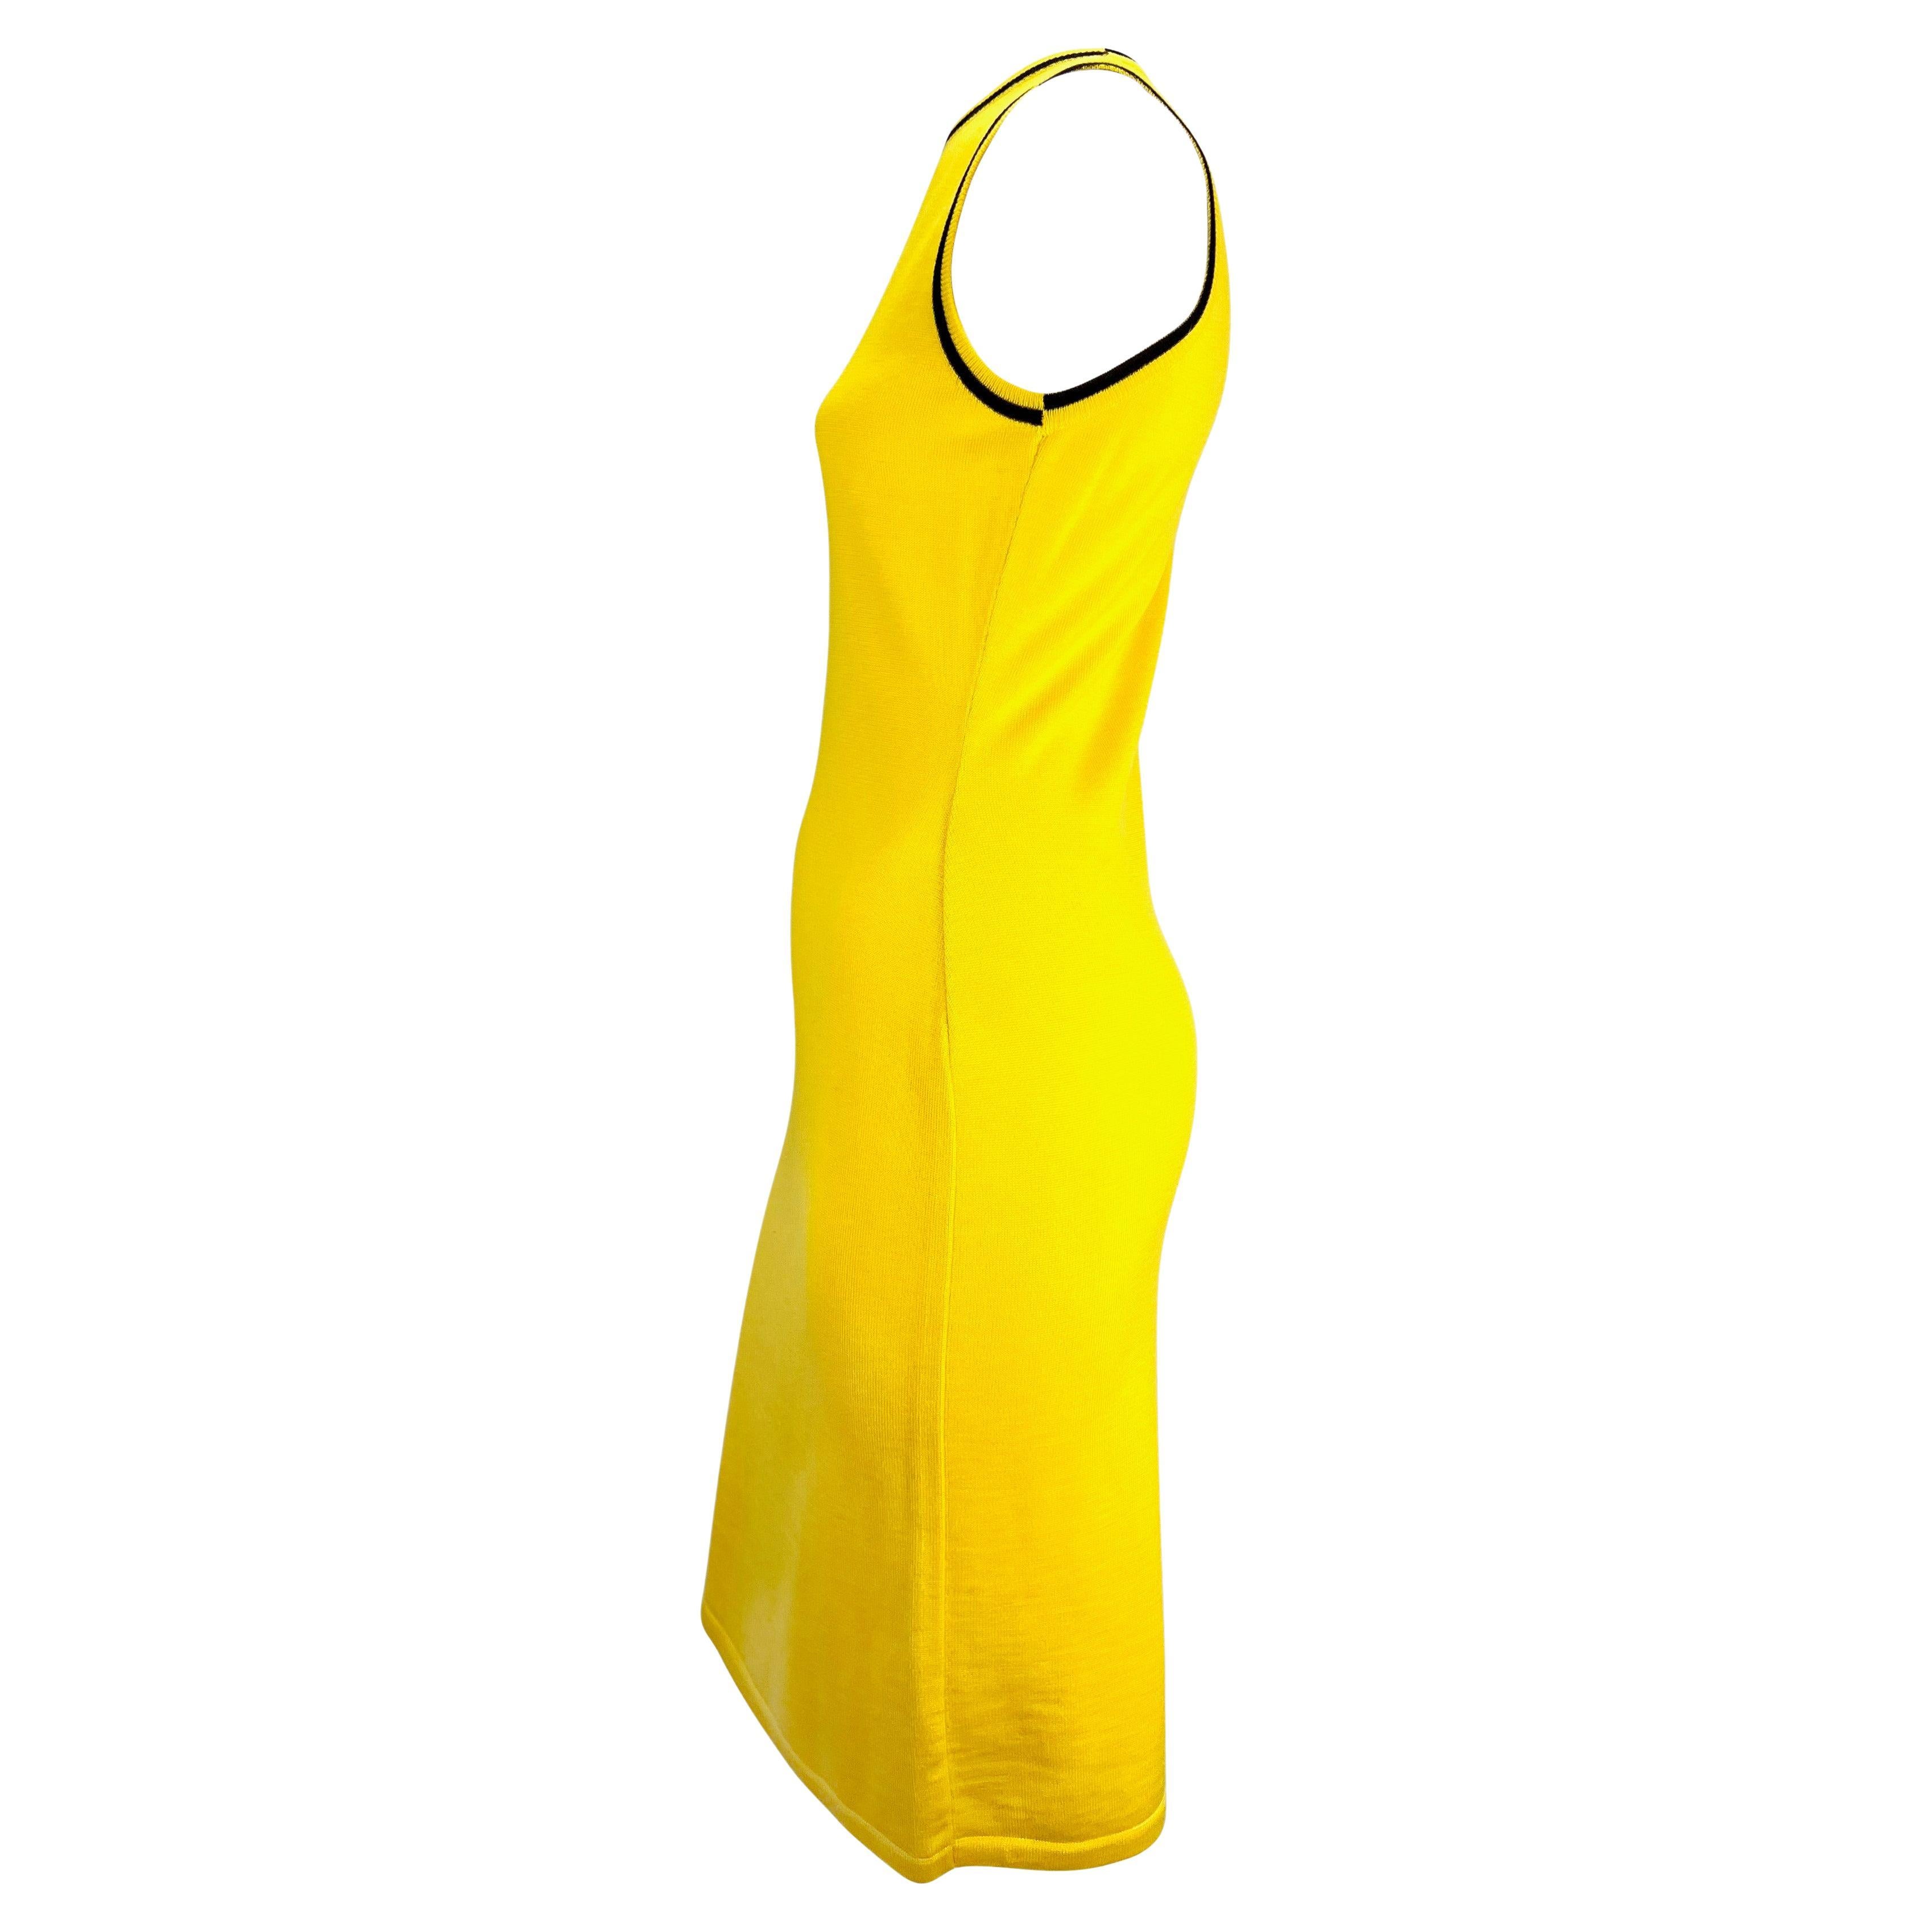 Présentation d'une robe sans manches en maille jaune canari de Gianni Versace. Datant de la fin des années 1990, cette robe élégante et formulée entièrement en laine tricotée est ornée d'une bande noire autour de l'encolure et des emmanchures. D'une